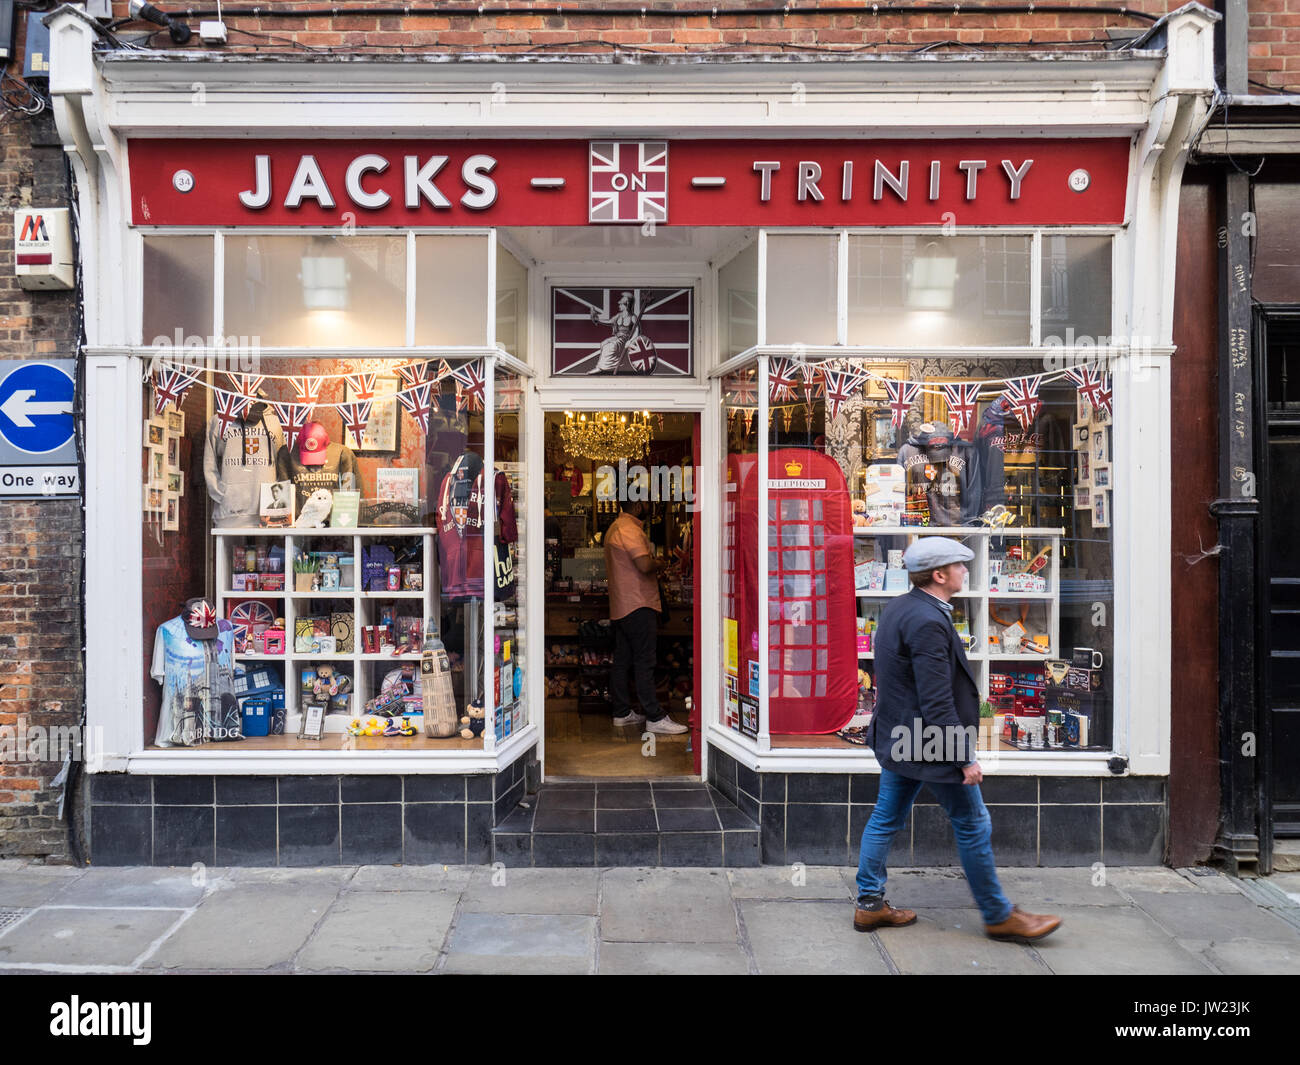 Cambridge - Tourisme Tourisme Jacks Cadeaux à Trinity Street Cambridge, Royaume-Uni Banque D'Images